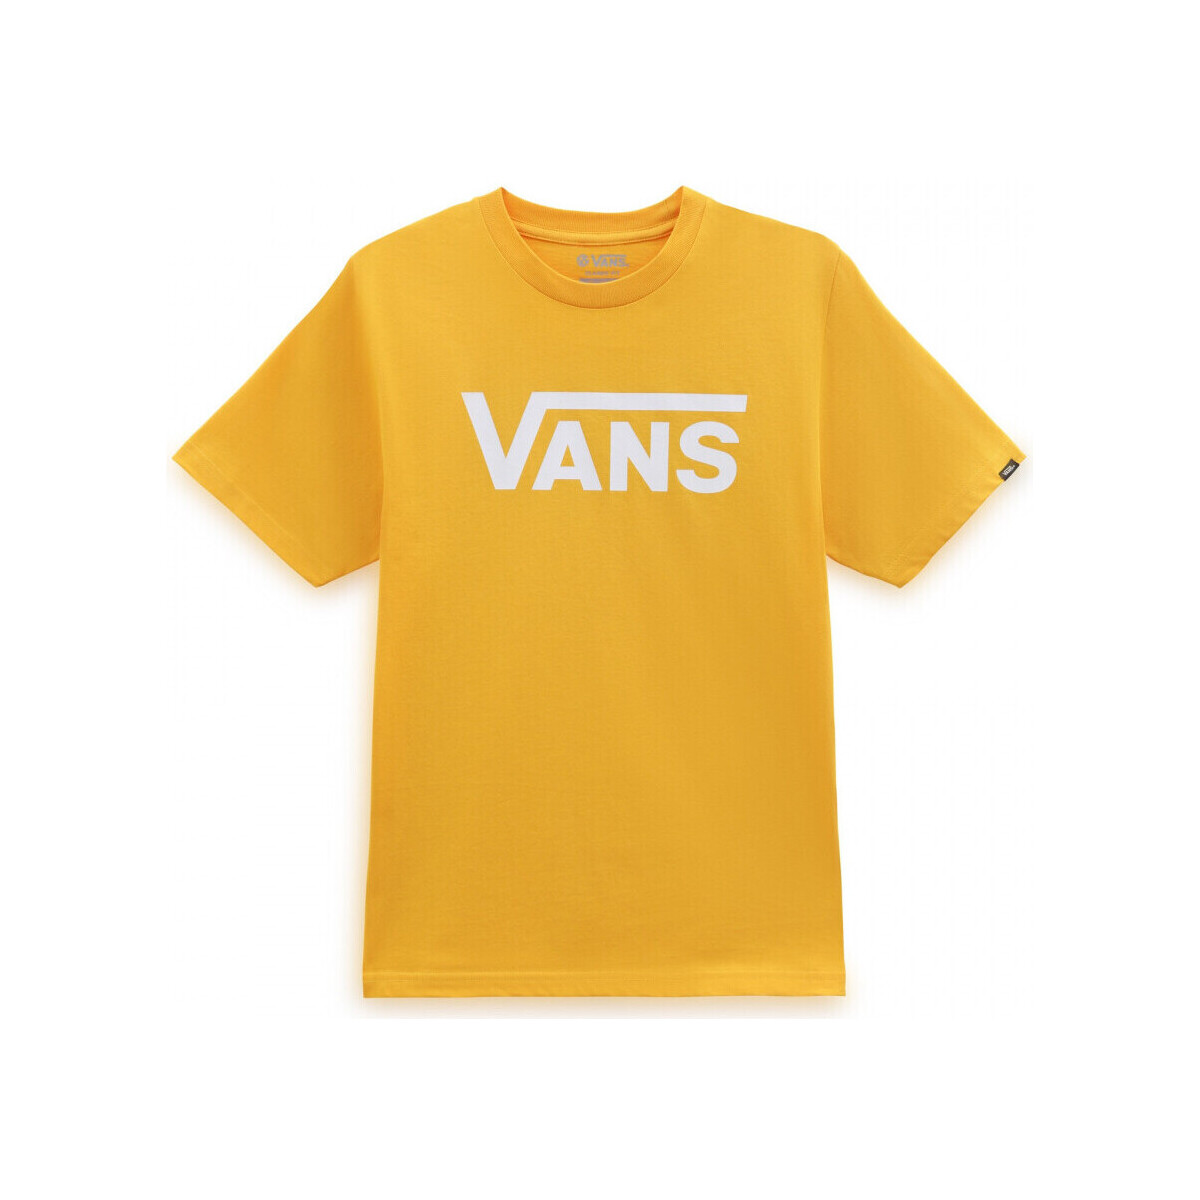 Υφασμάτινα Αγόρι T-shirts & Μπλούζες Vans classic boys Yellow